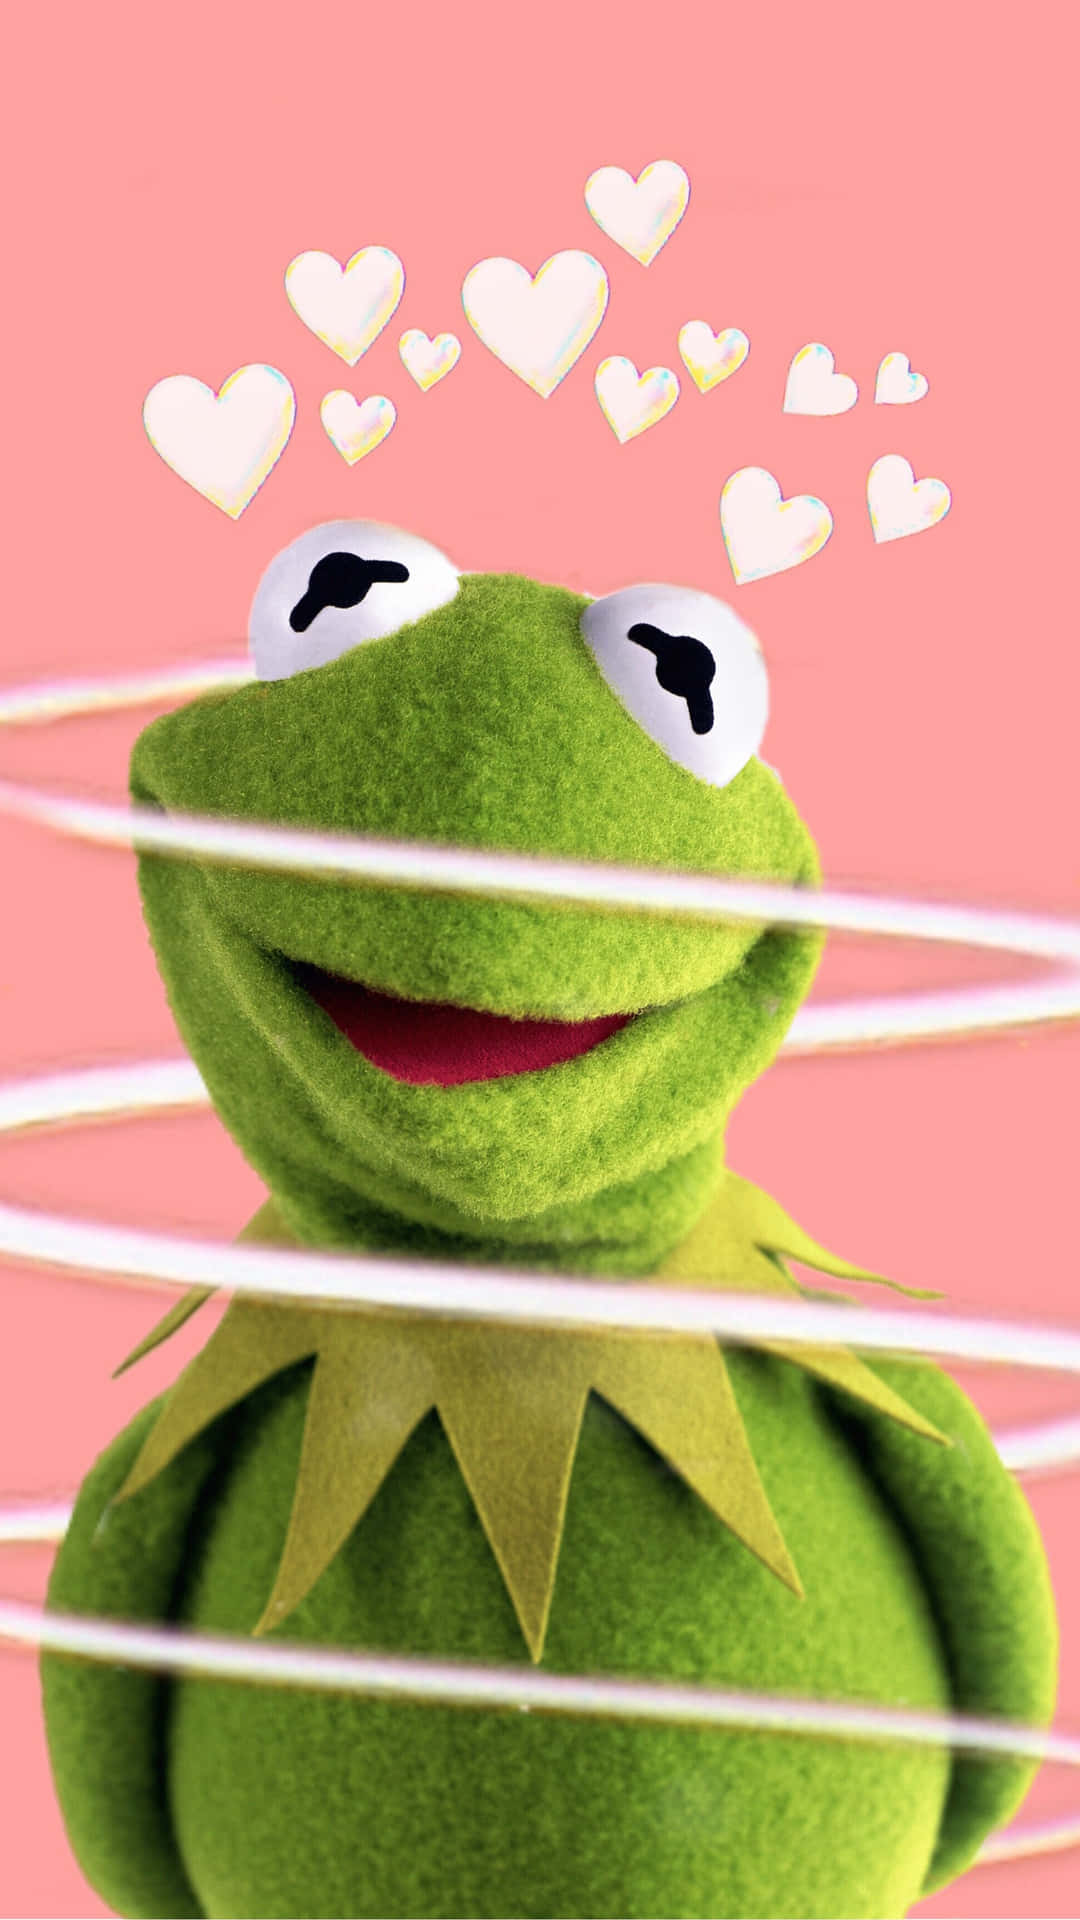 Ensjov-elskende Kermit The Frog Klædt På På En Æstetisk Tiltalende Måde. Wallpaper